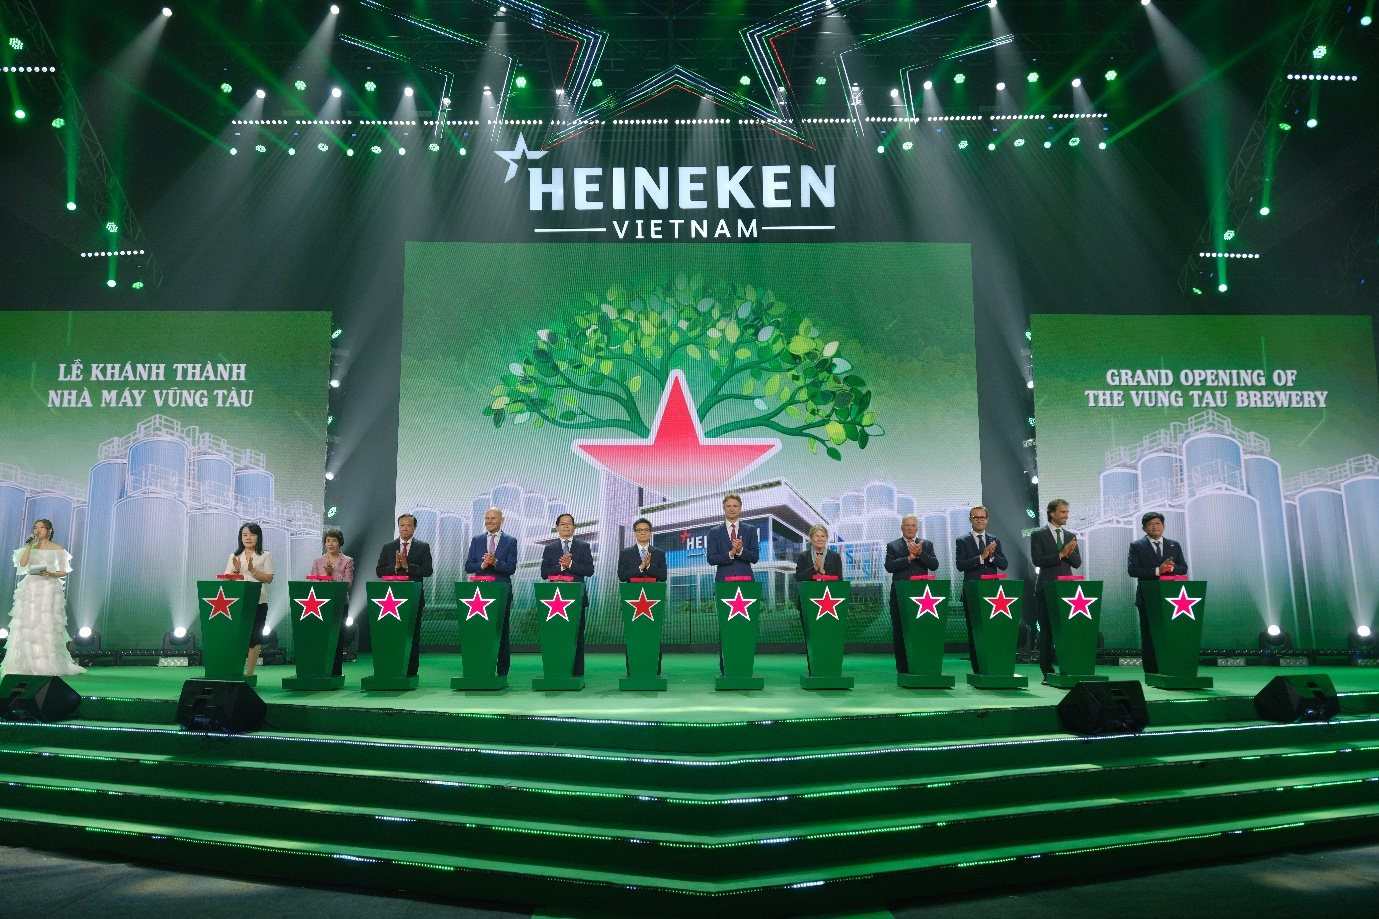 Mặc cho thị trường giảm tốc, HEINEKEN Việt Nam vẫn lập đỉnh doanh thu tỷ USD - Ảnh 1.